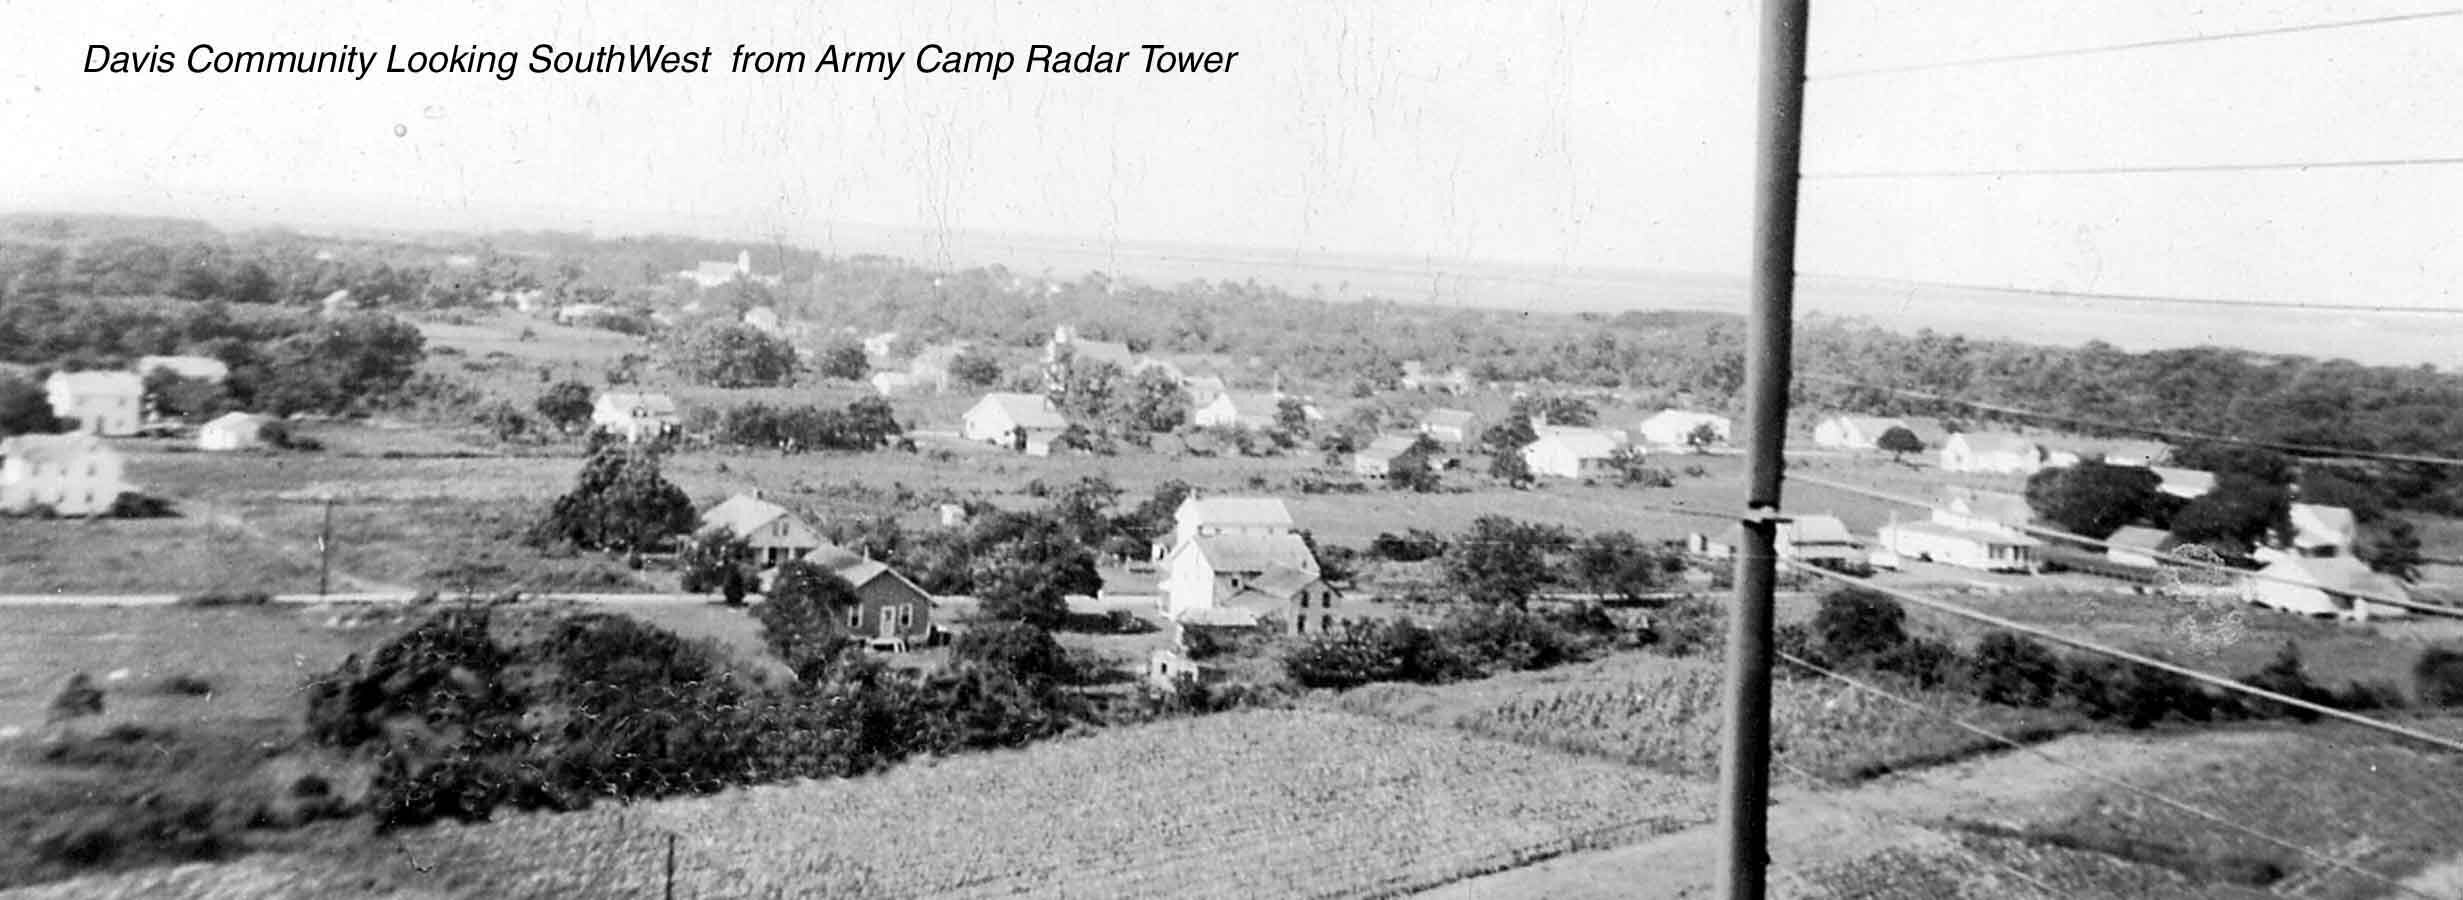 Davis Army Camp story photo.jpg